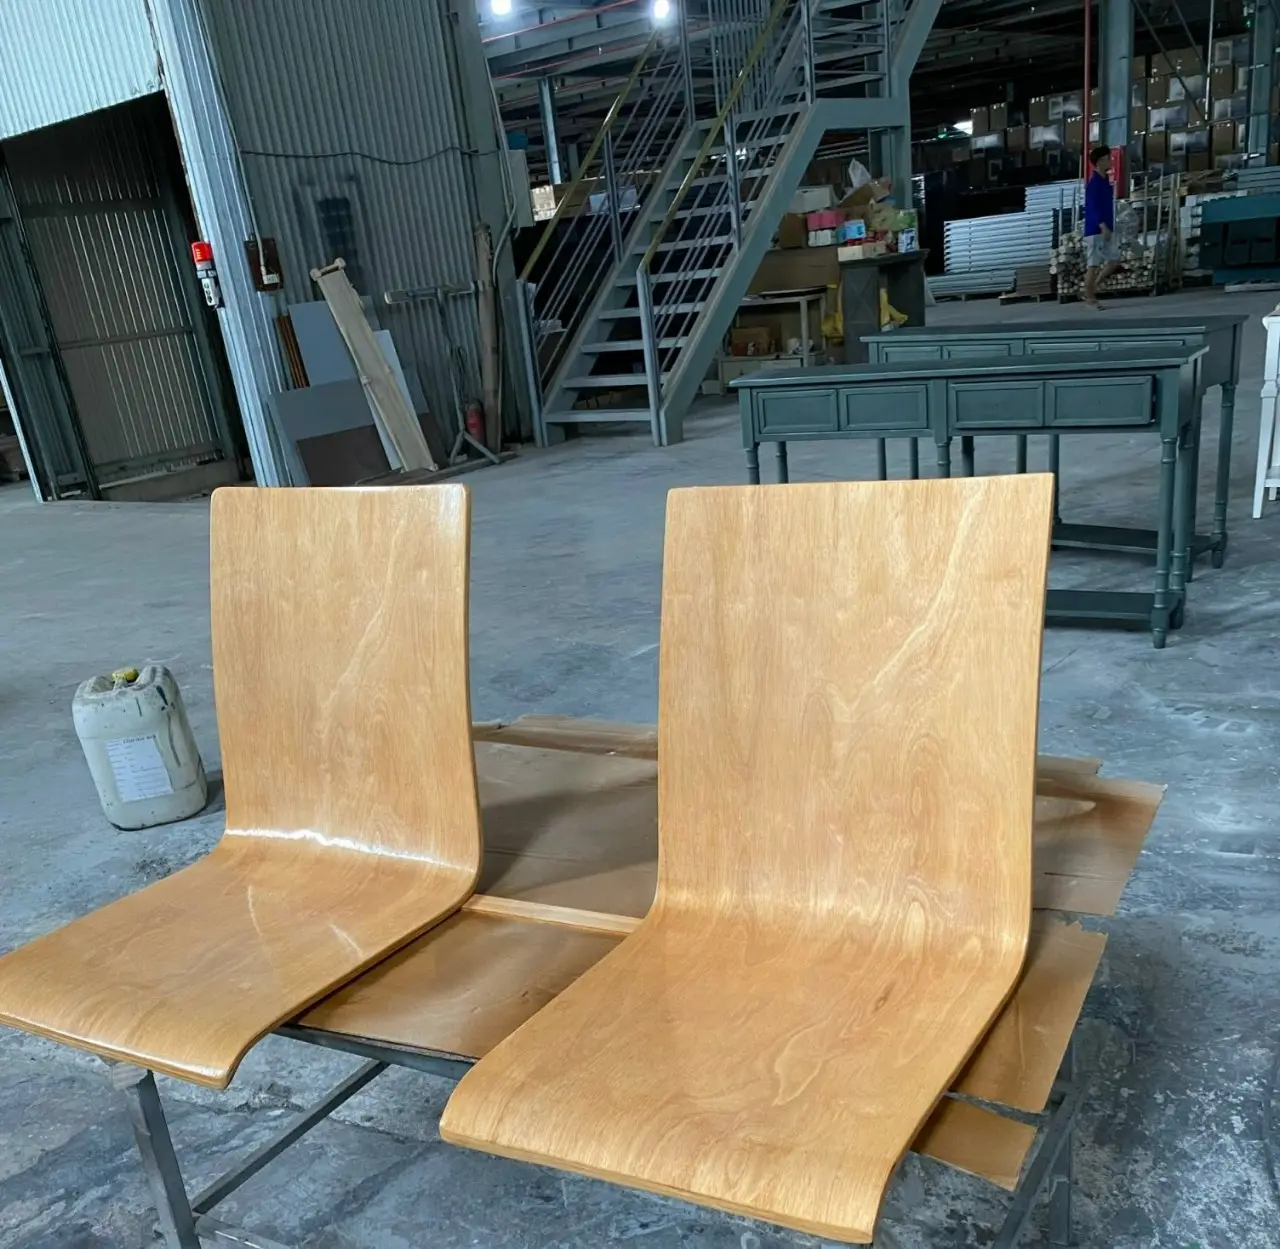 بسعر المصنع إطار كرسي مصنوع من الخشب الرقائقي المنحني المُعالج بالتحكم الرقمي بواسطة الحاسوب خشب رقائقي خشبي مخصص للأثاث تصدير رائدة